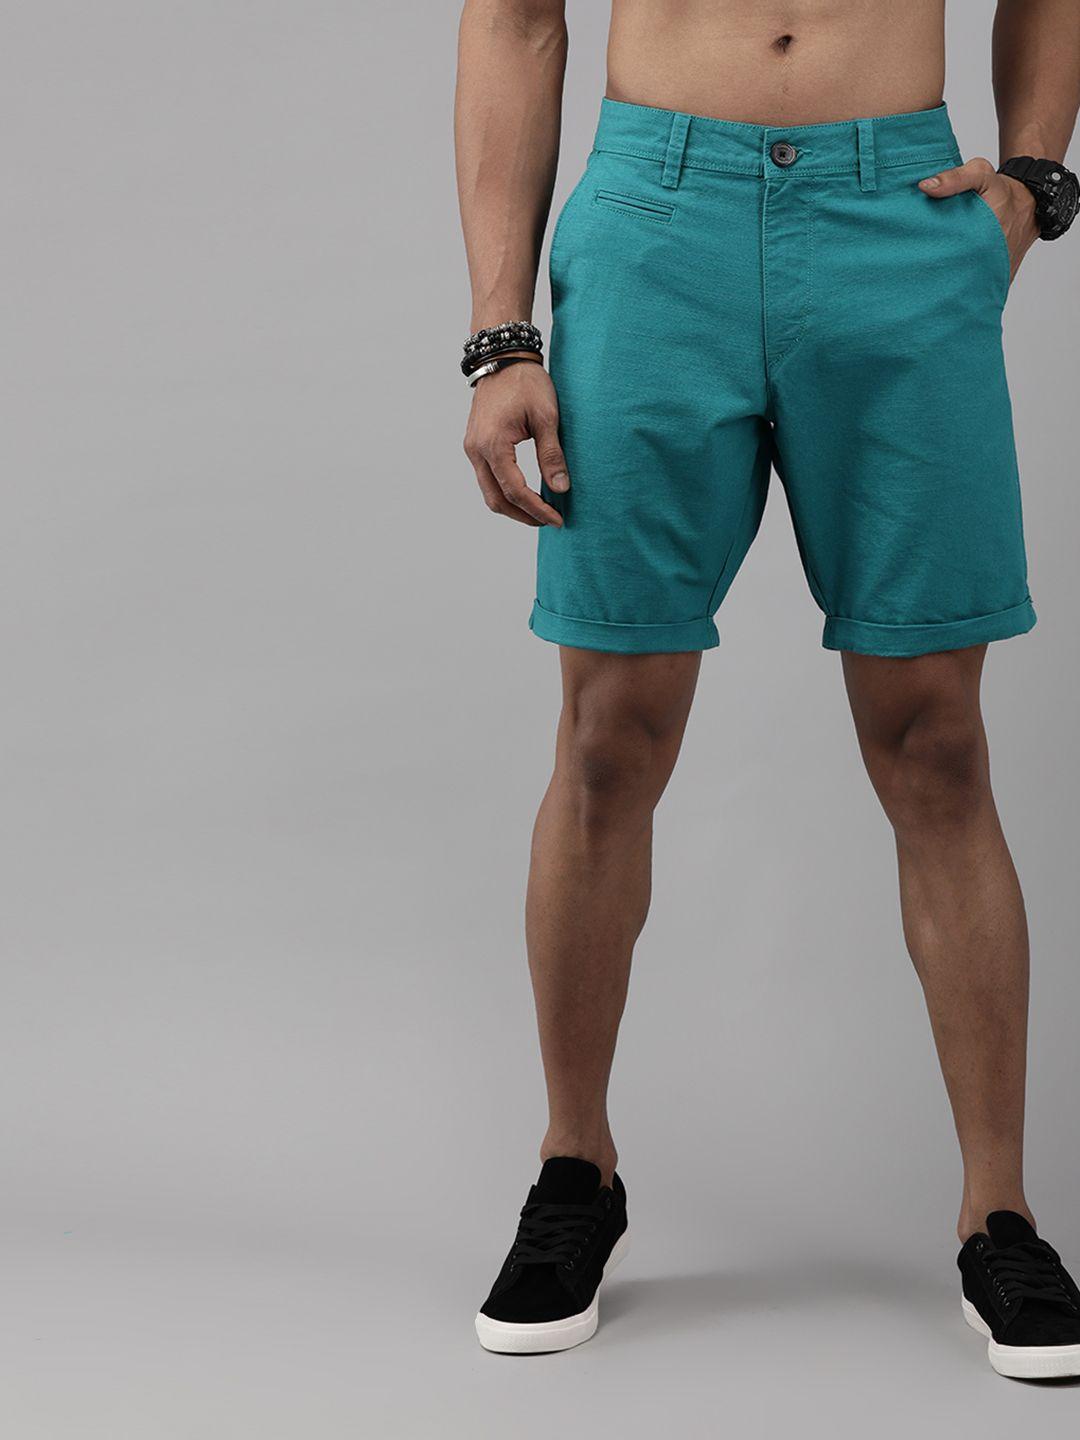 roadster men teal blue solid regular fit regular shorts